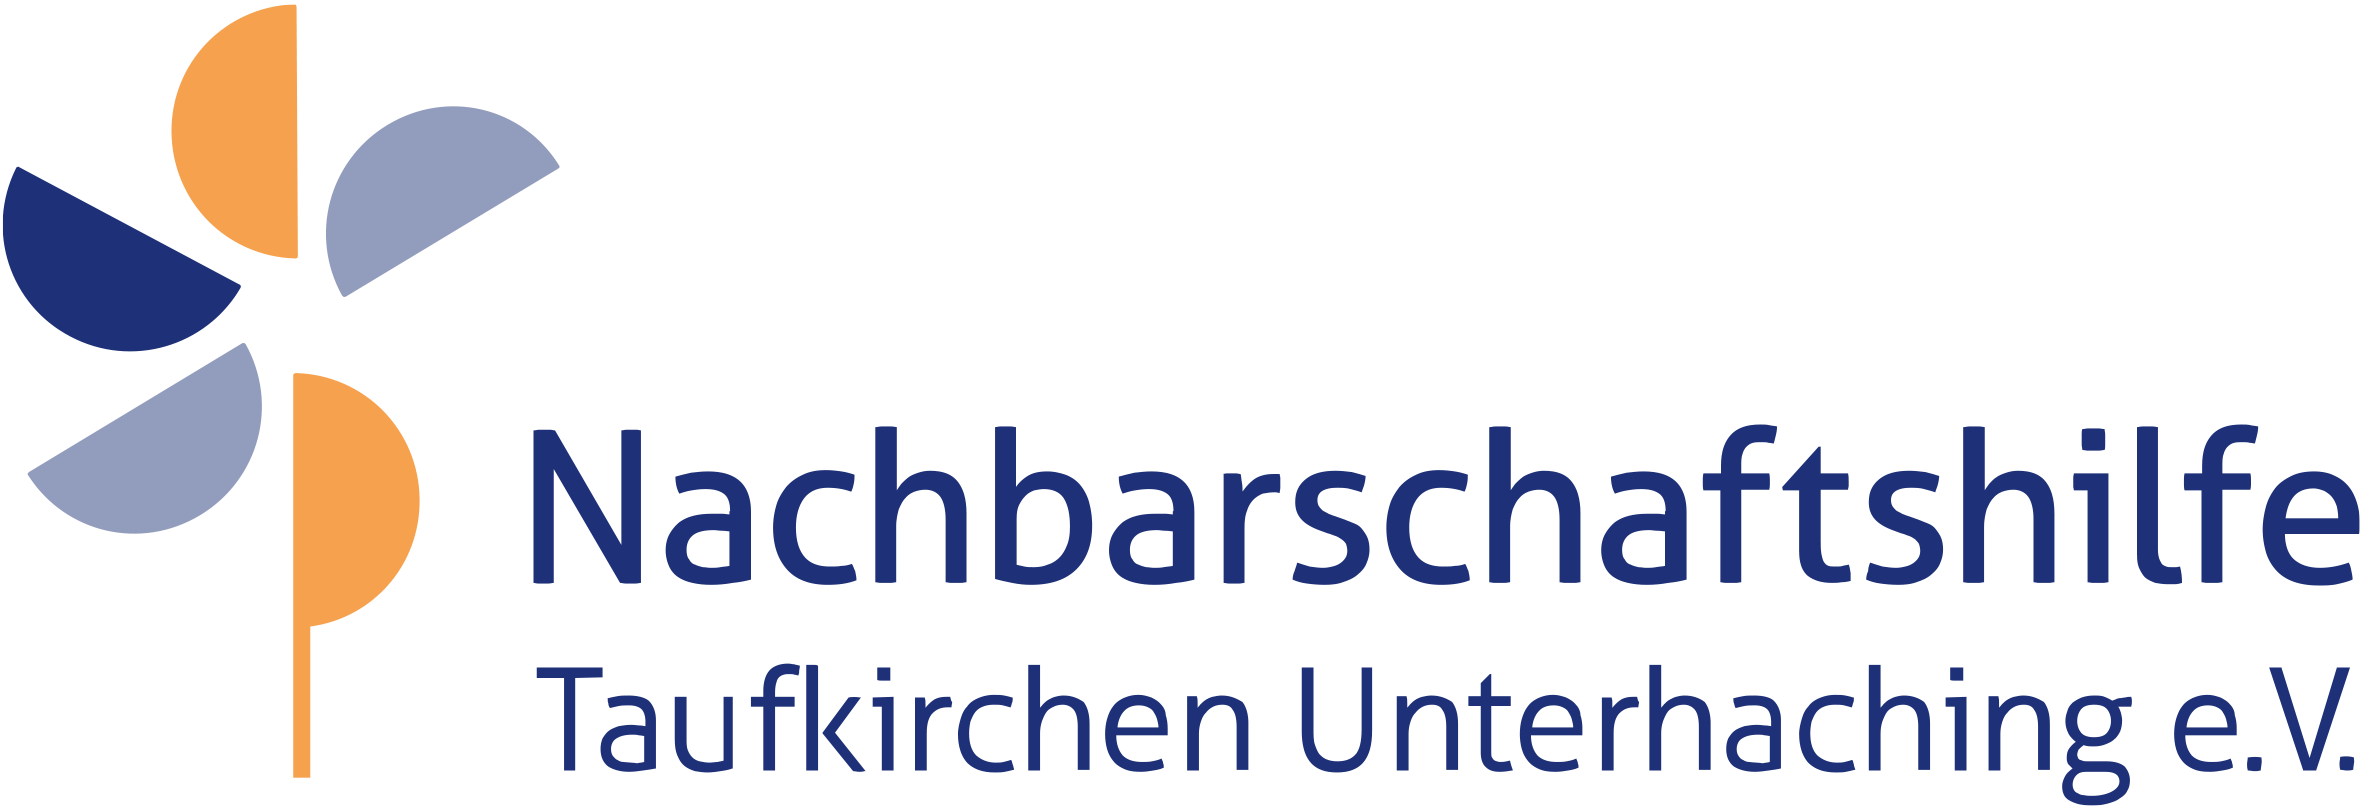 Nachbarschaftshilfe Taufkirchen Unterhaching - Kinder- und Jugendbasar